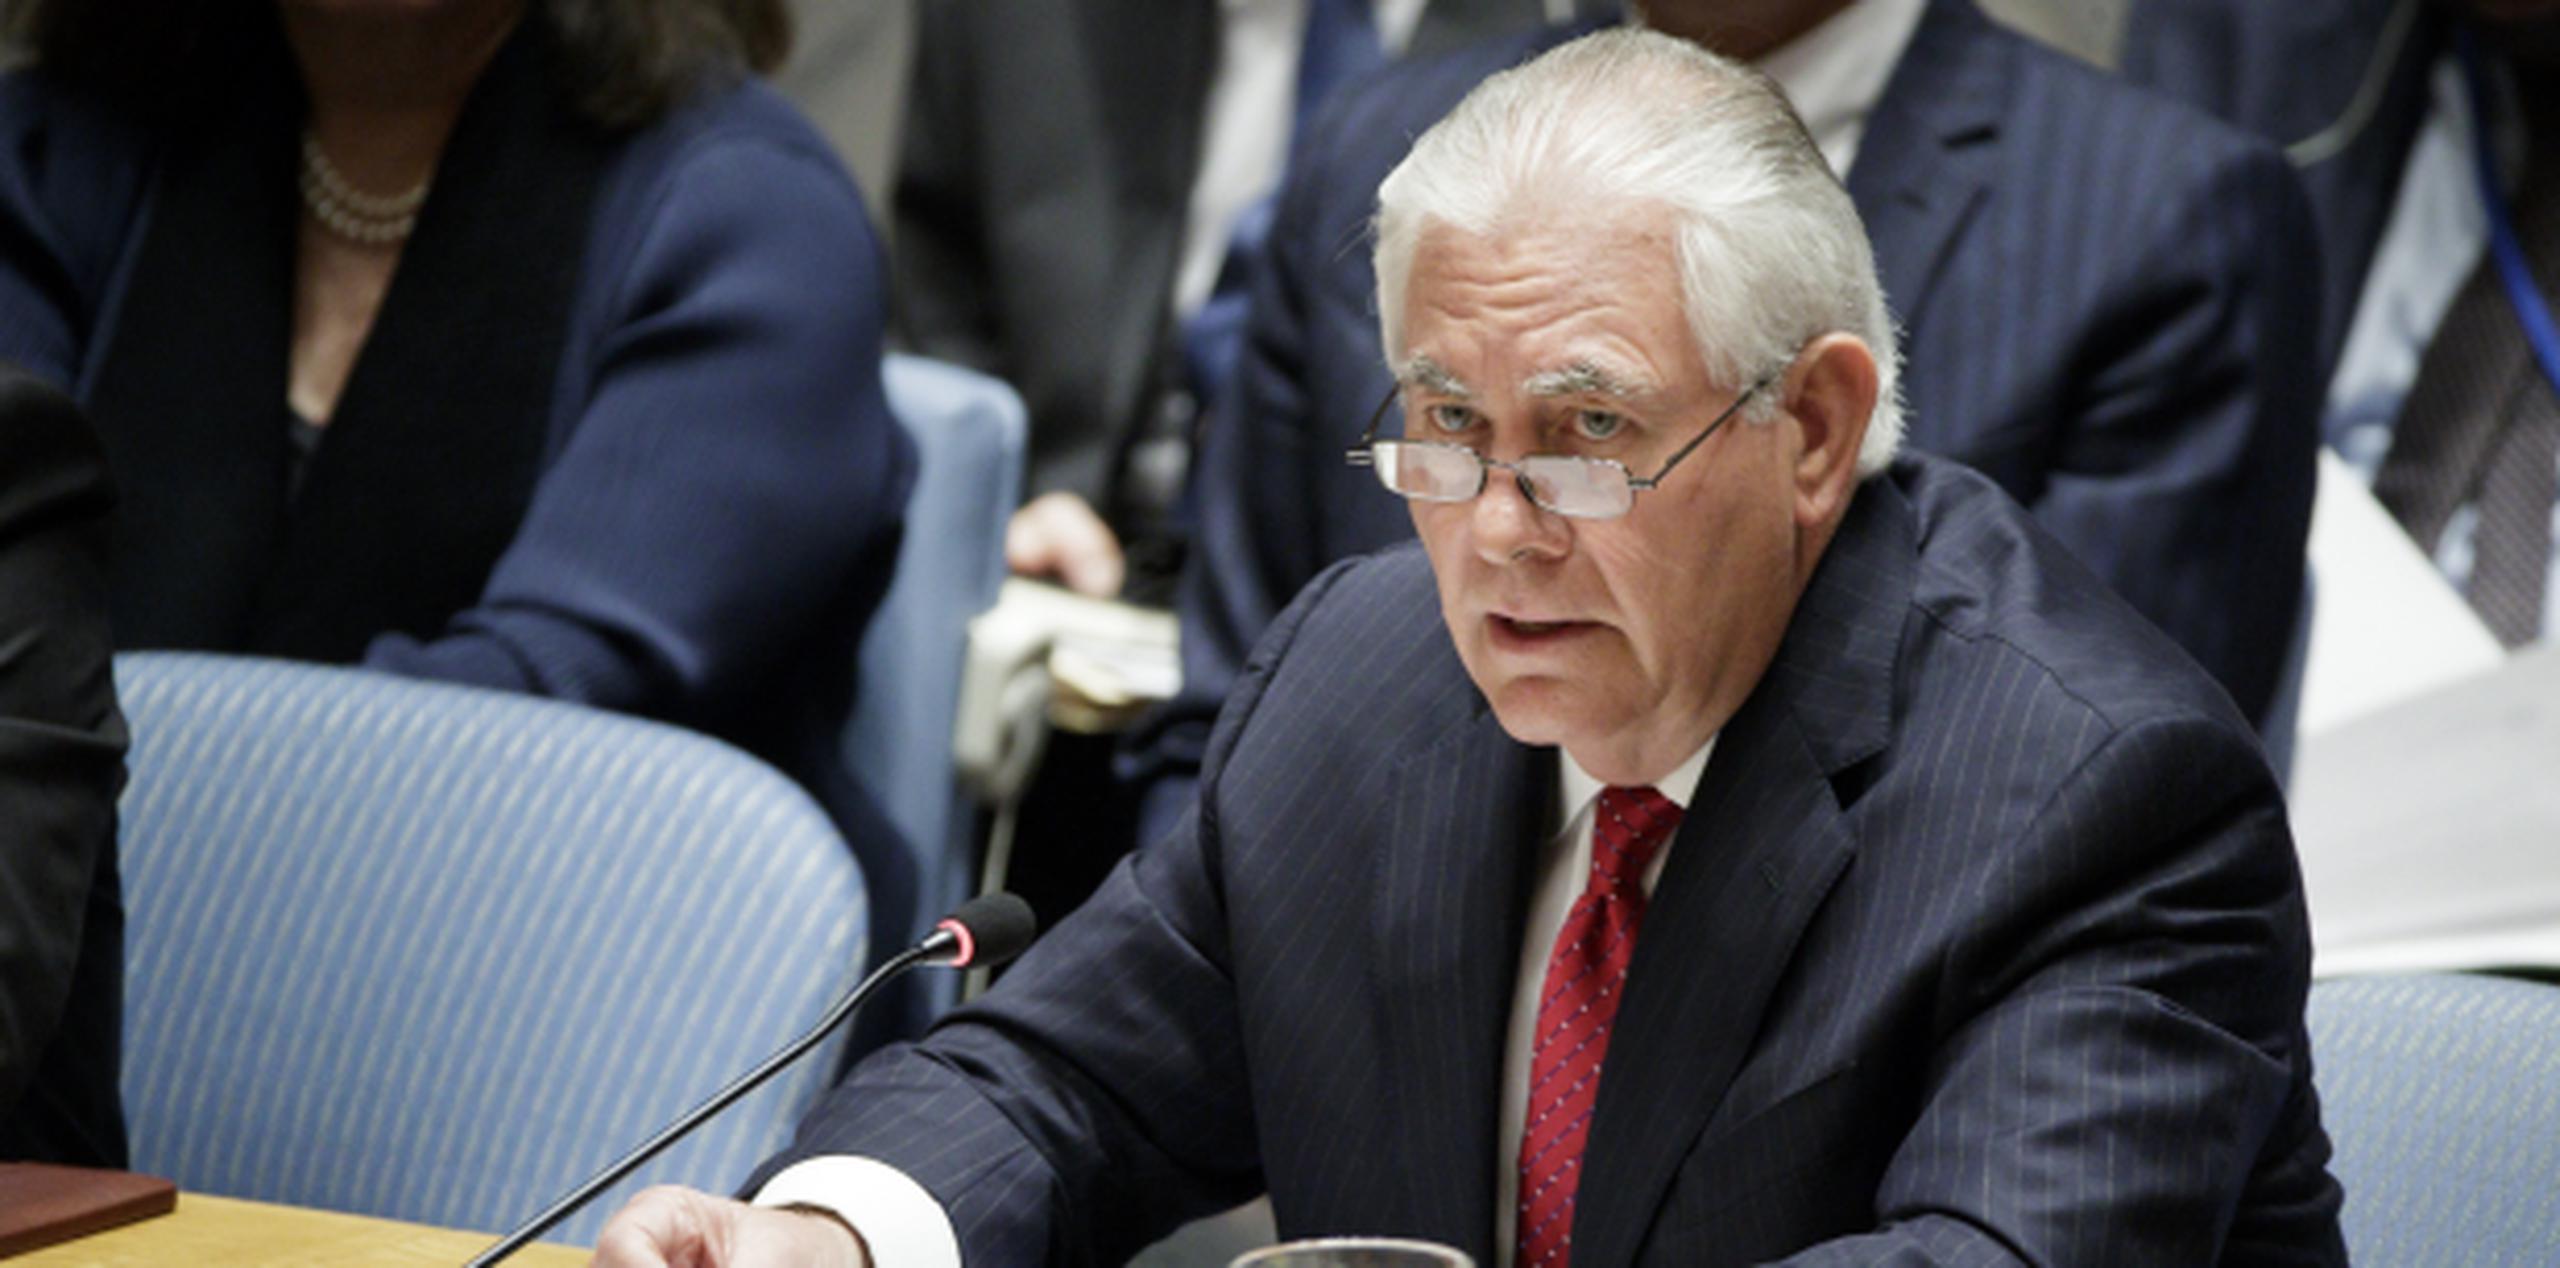 El secretario de Estado estadounidense Rex Tillerson advirtió ante las Naciones Unidas que tomarían acción militar contra Corea del Norte "si es necesario". (EFE/Justin Lane)